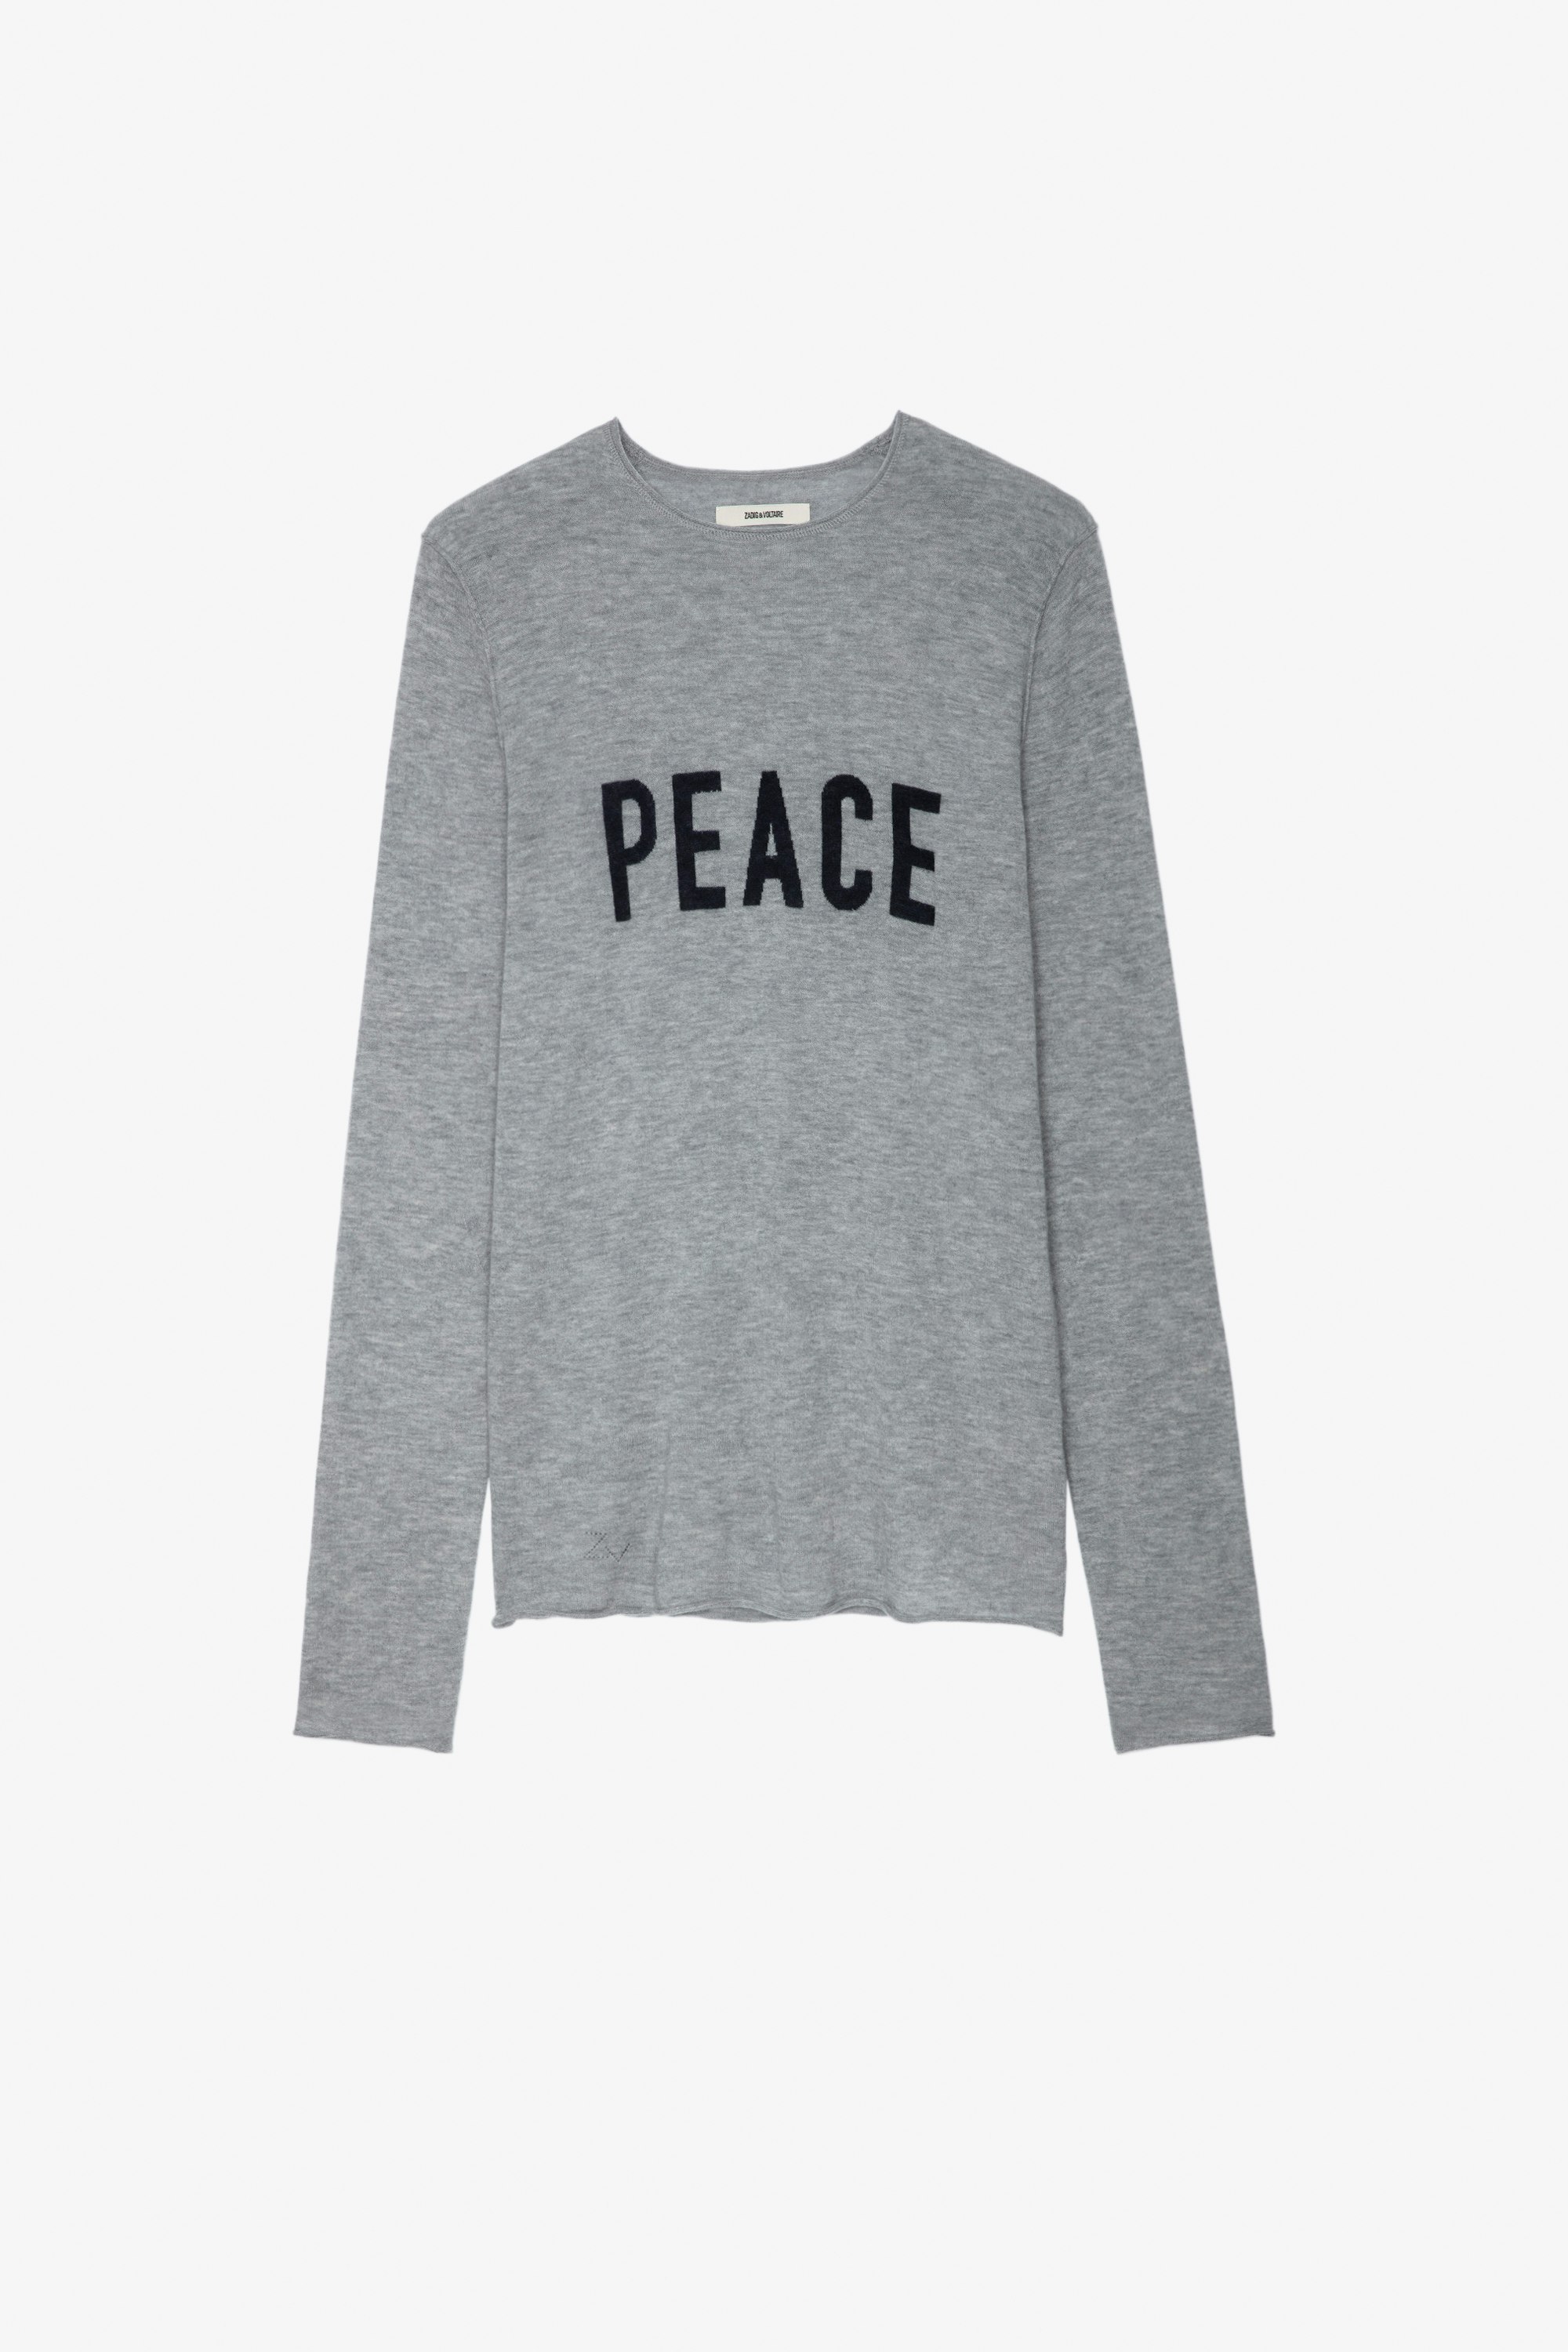 Jersey Teiss Jersey de cachemira color gris jaspeado con cuello redondo, mangas largas y con mensaje «Peace» Hombre